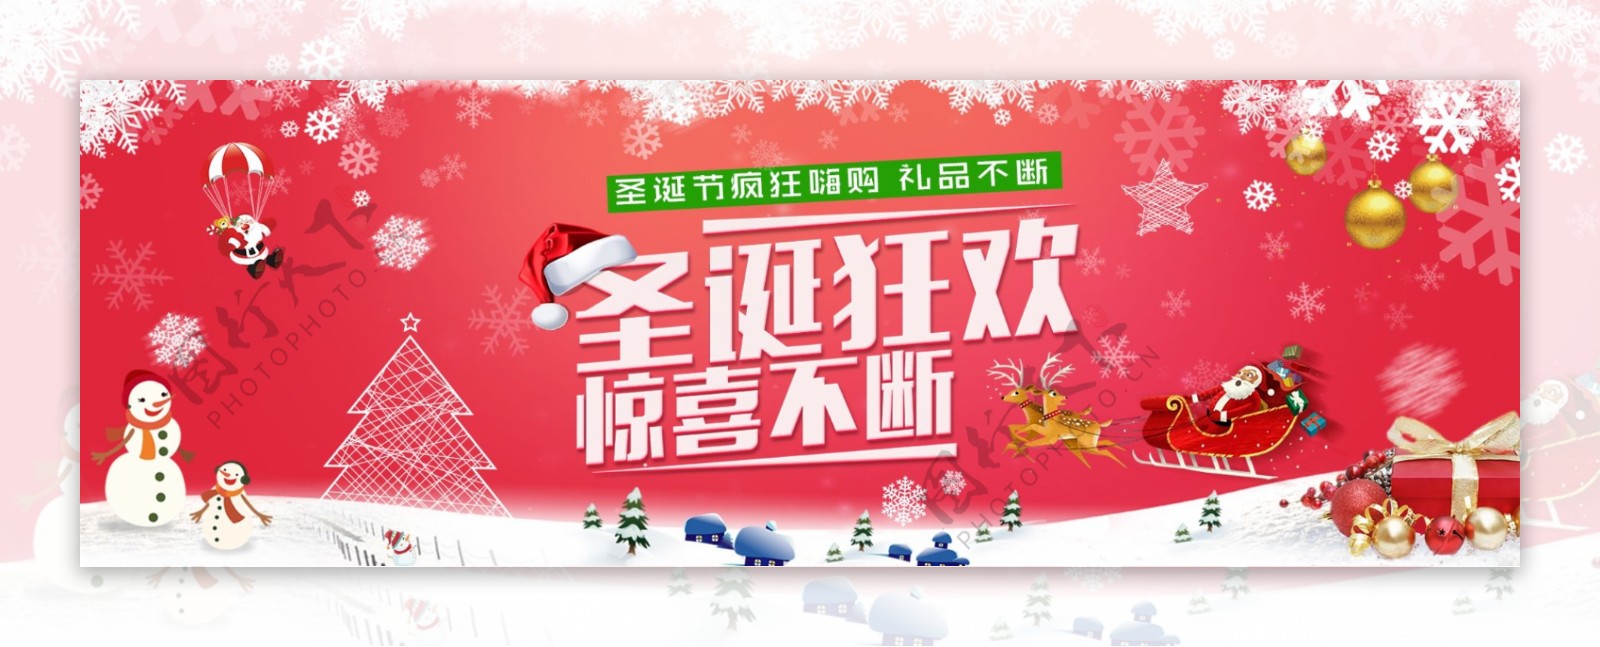 圣诞节淘宝促销节日海报banner